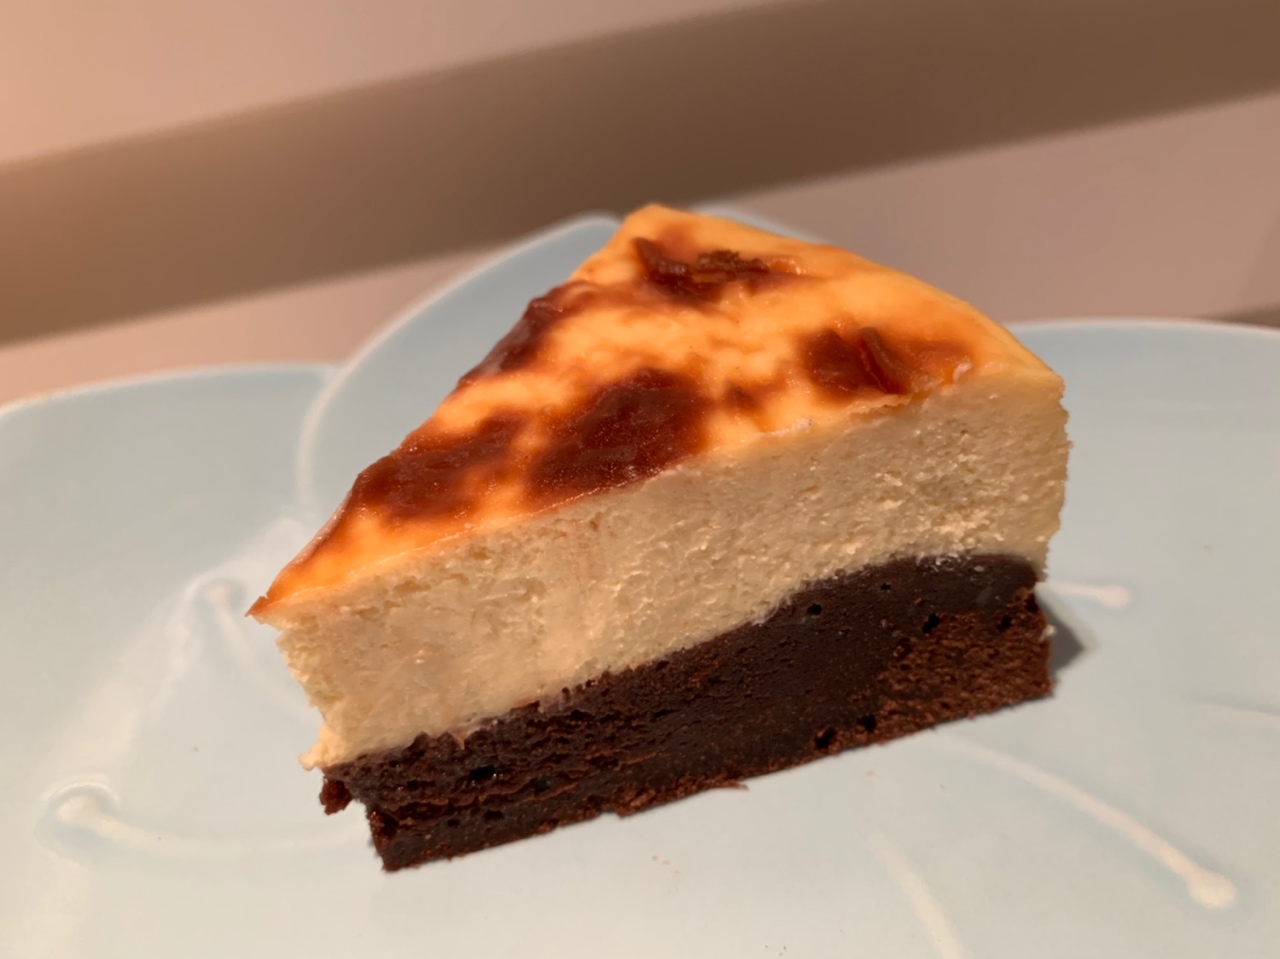 Kiri奶油芝士食谱——芝士布朗尼蛋糕